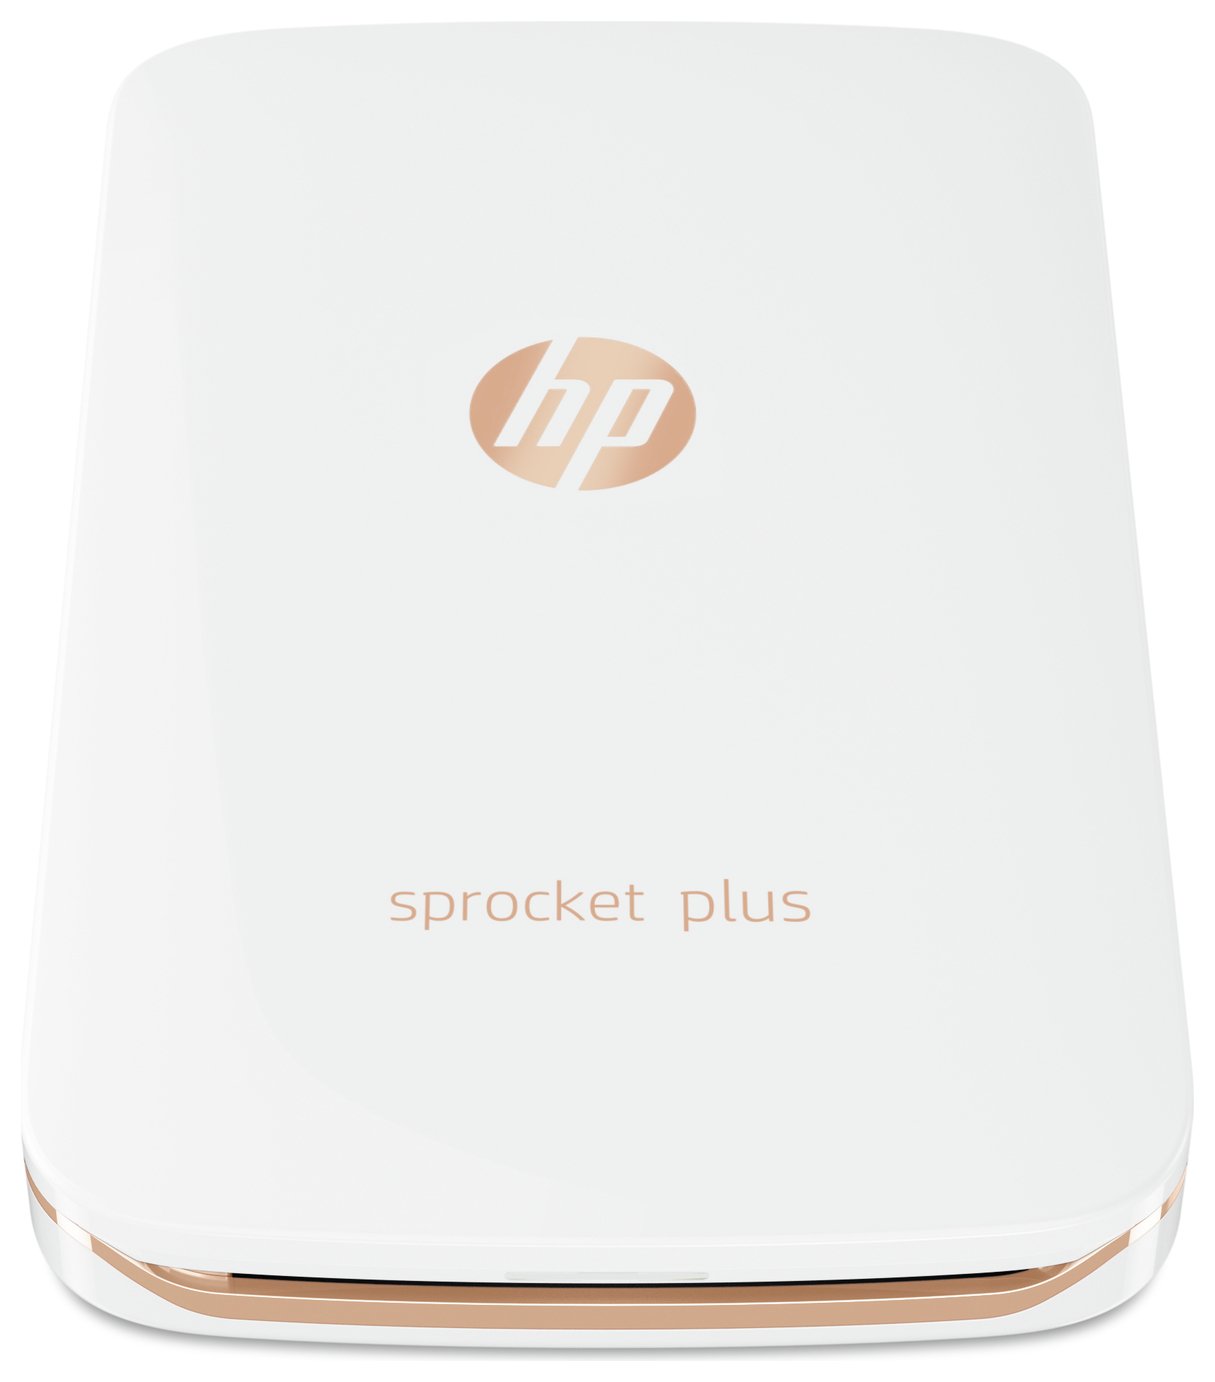 HP Sprocket Plus Portable Photo Printer - White